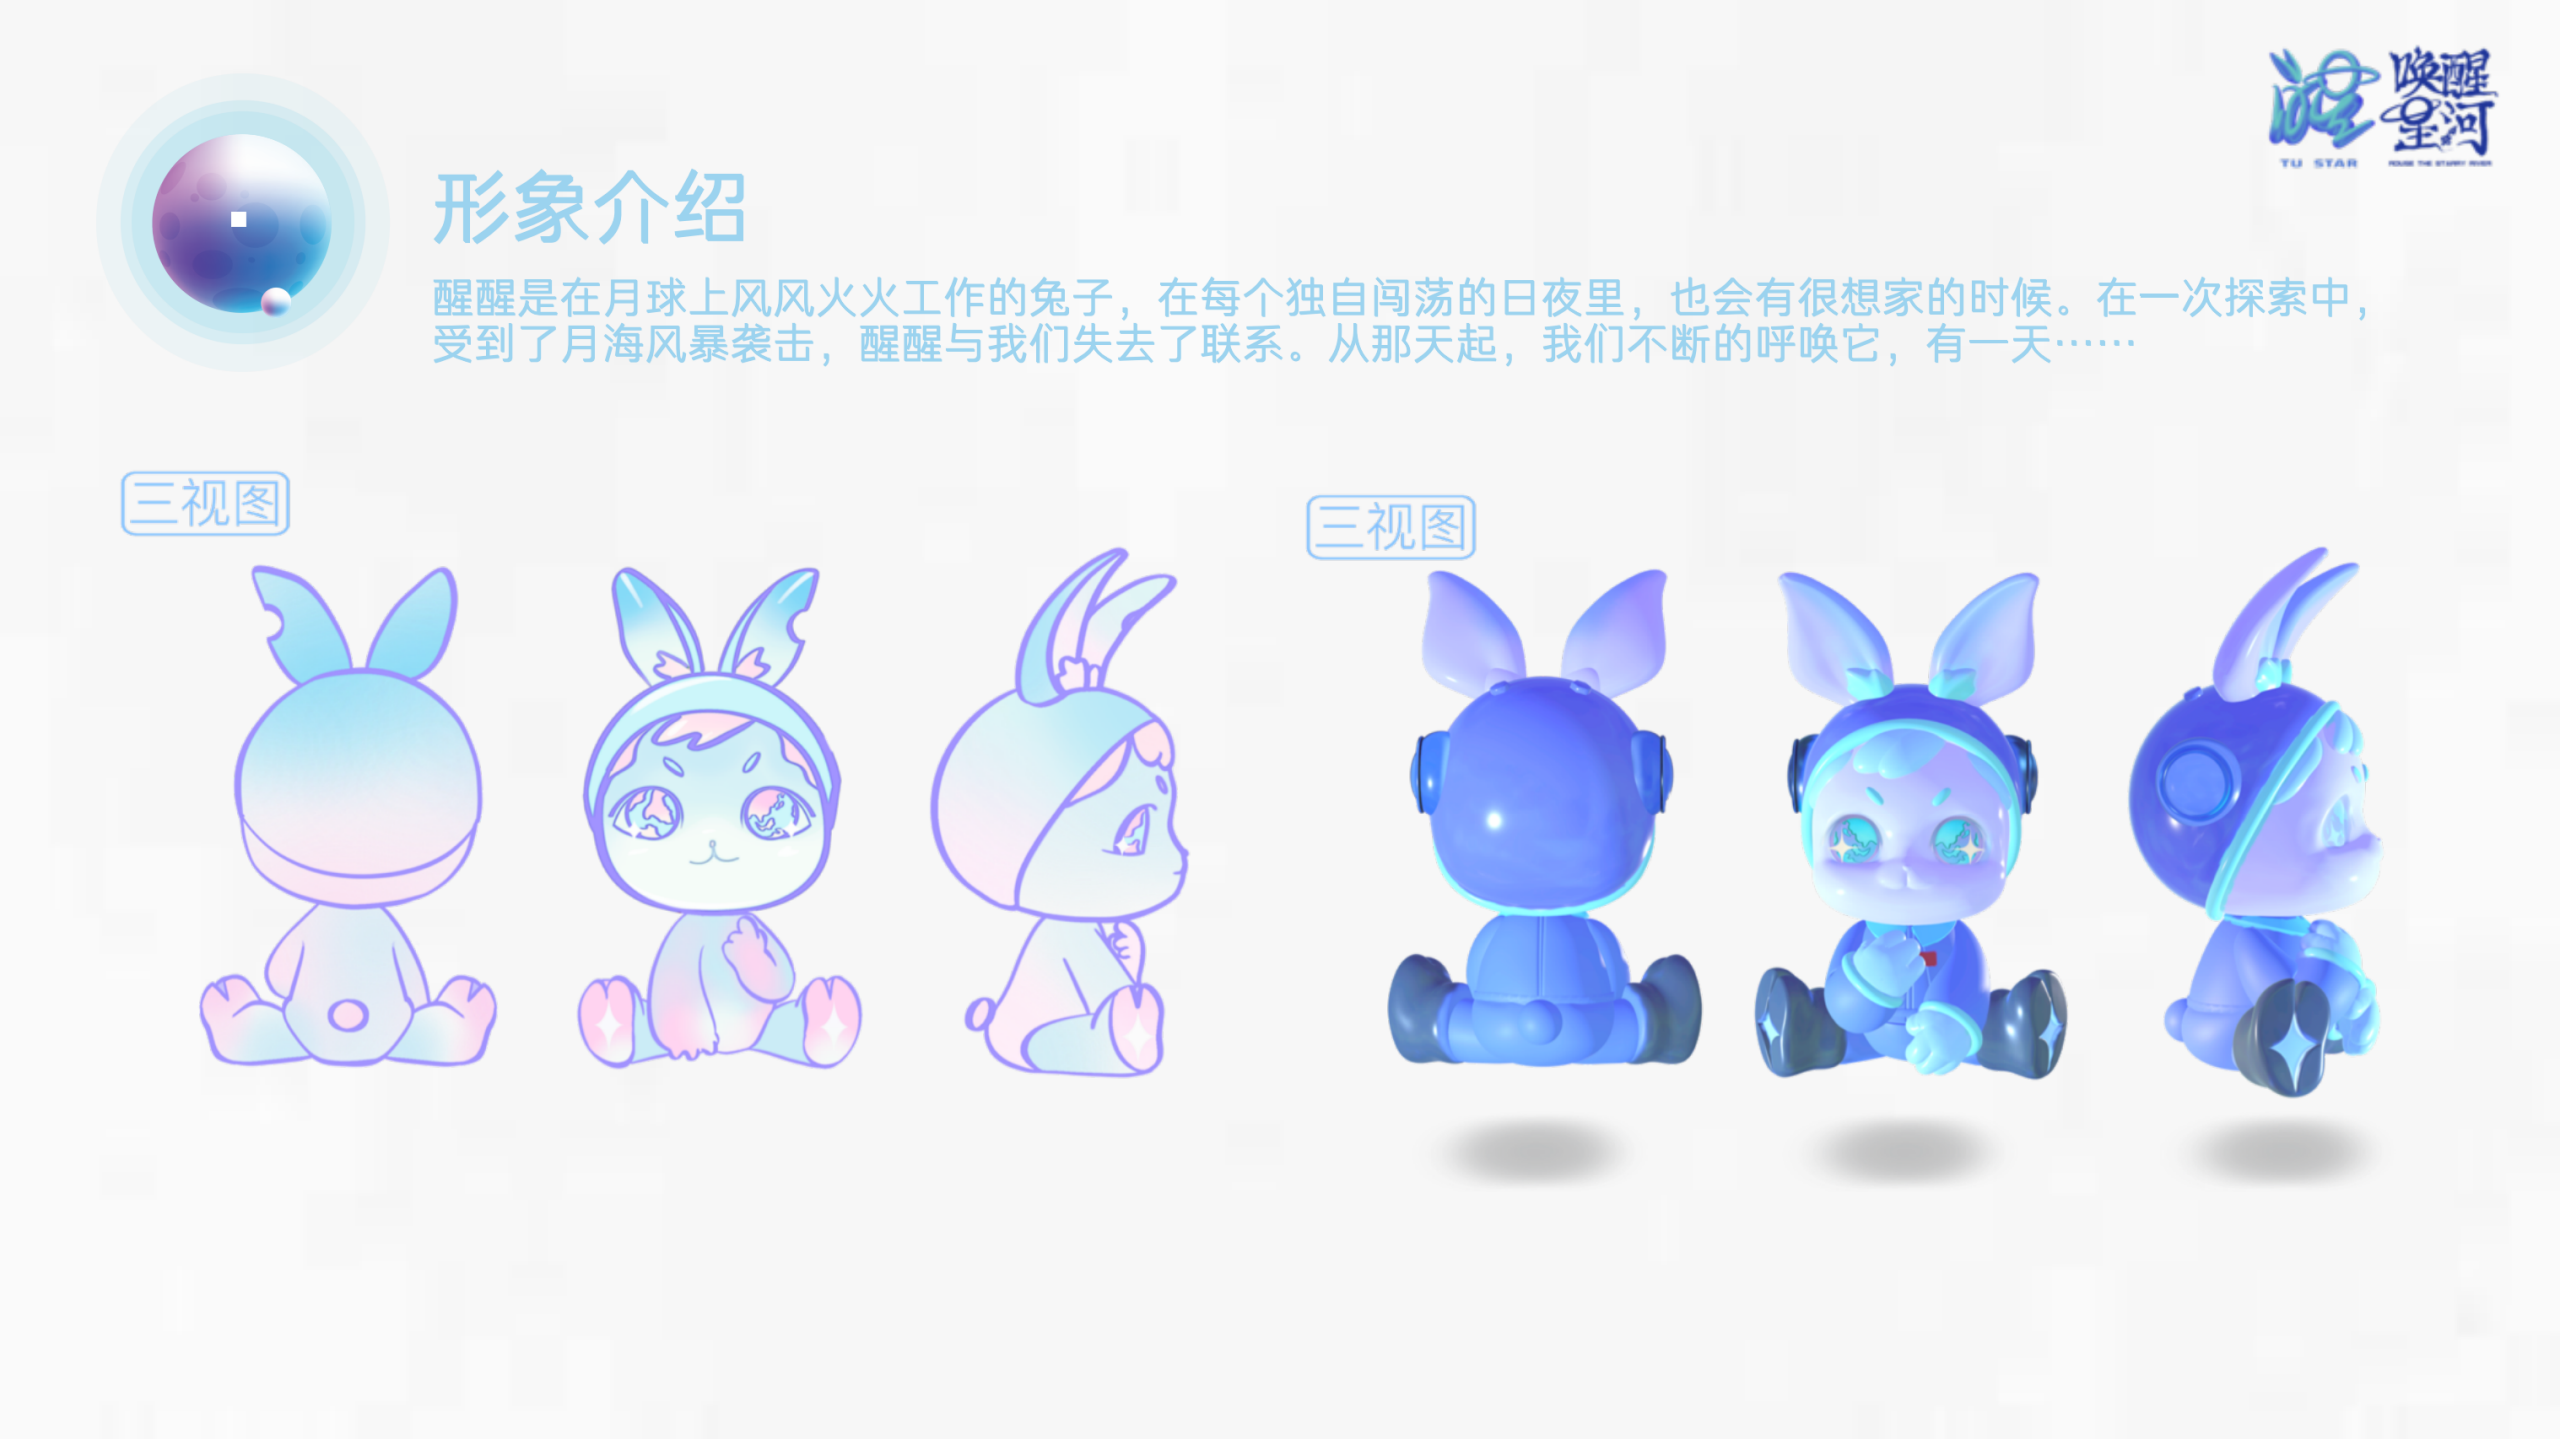 兔醒醒星遇光年-中国航天联名潮玩兔子IP美陈装置展